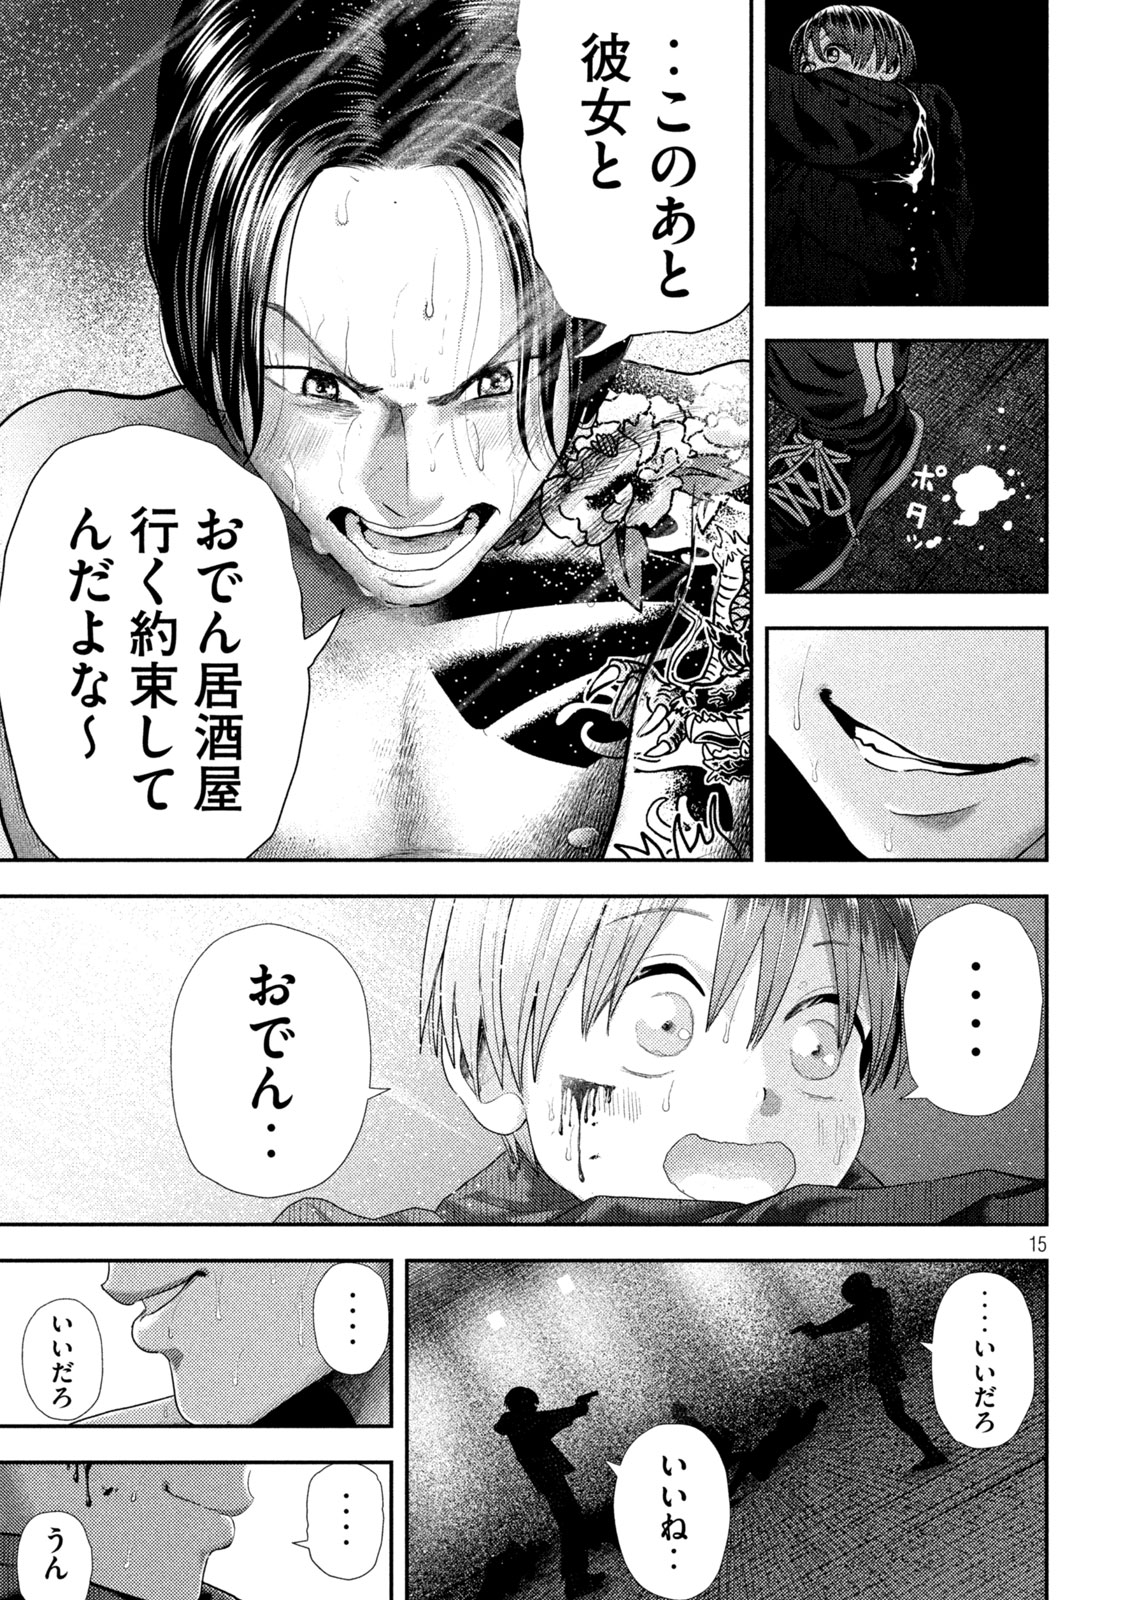 Nezumi no Koi - Chapter 33 - Page 15